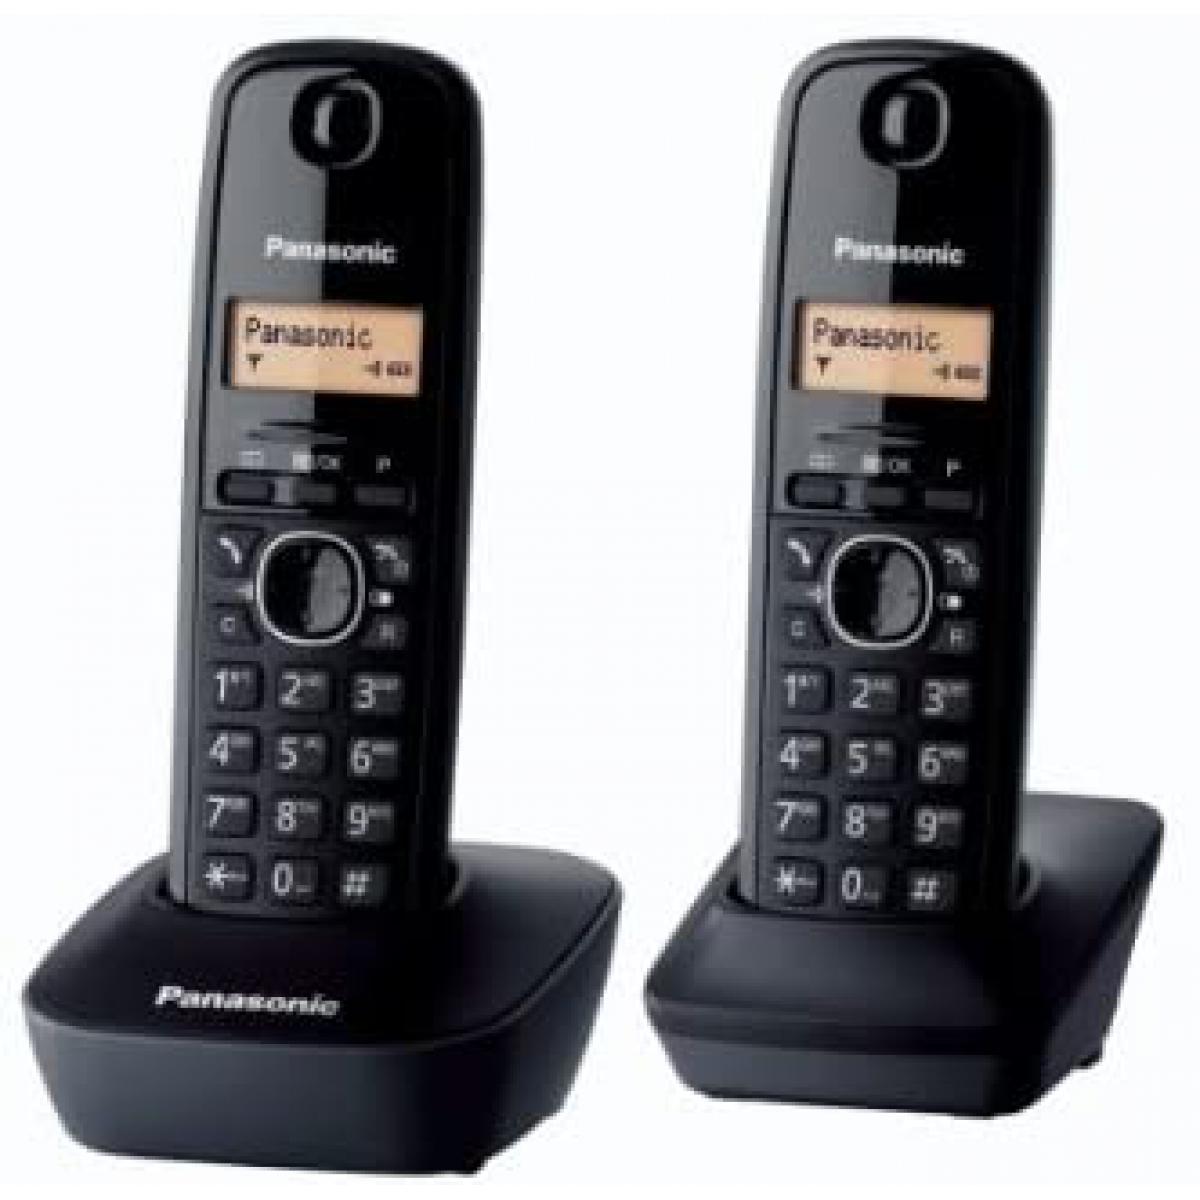 Panasonic - Rasage Electrique - telephone Duo sans fil DECT sans répondeur noir - Téléphone fixe filaire